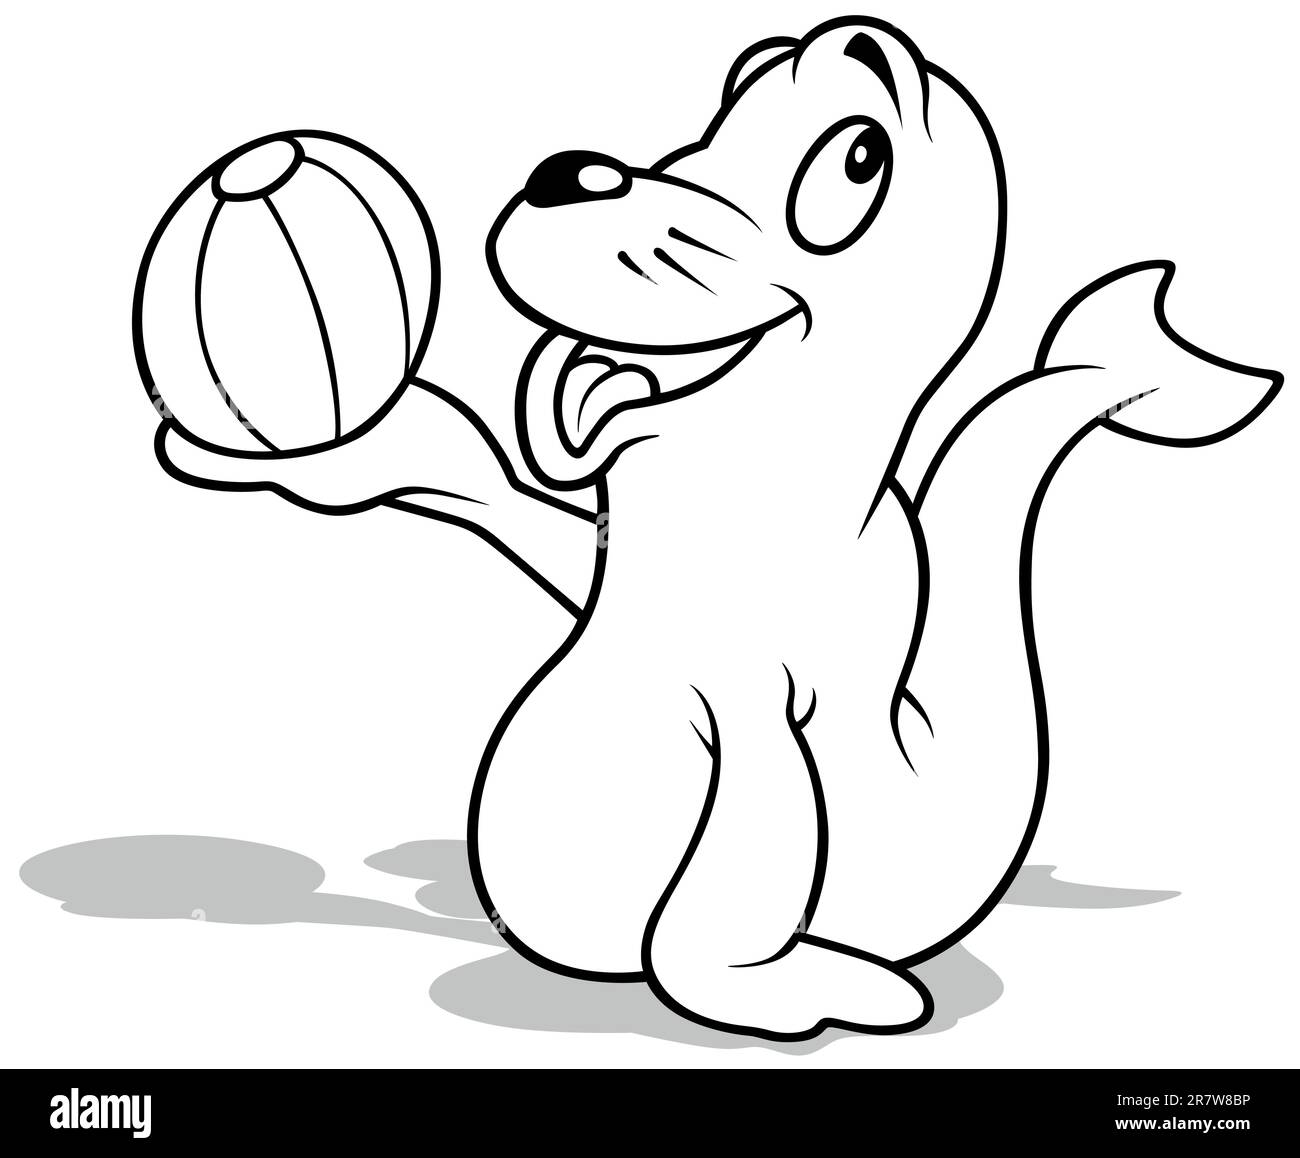 Dessin d'un lion de mer souriant tenant un ballon de plage Illustration de Vecteur